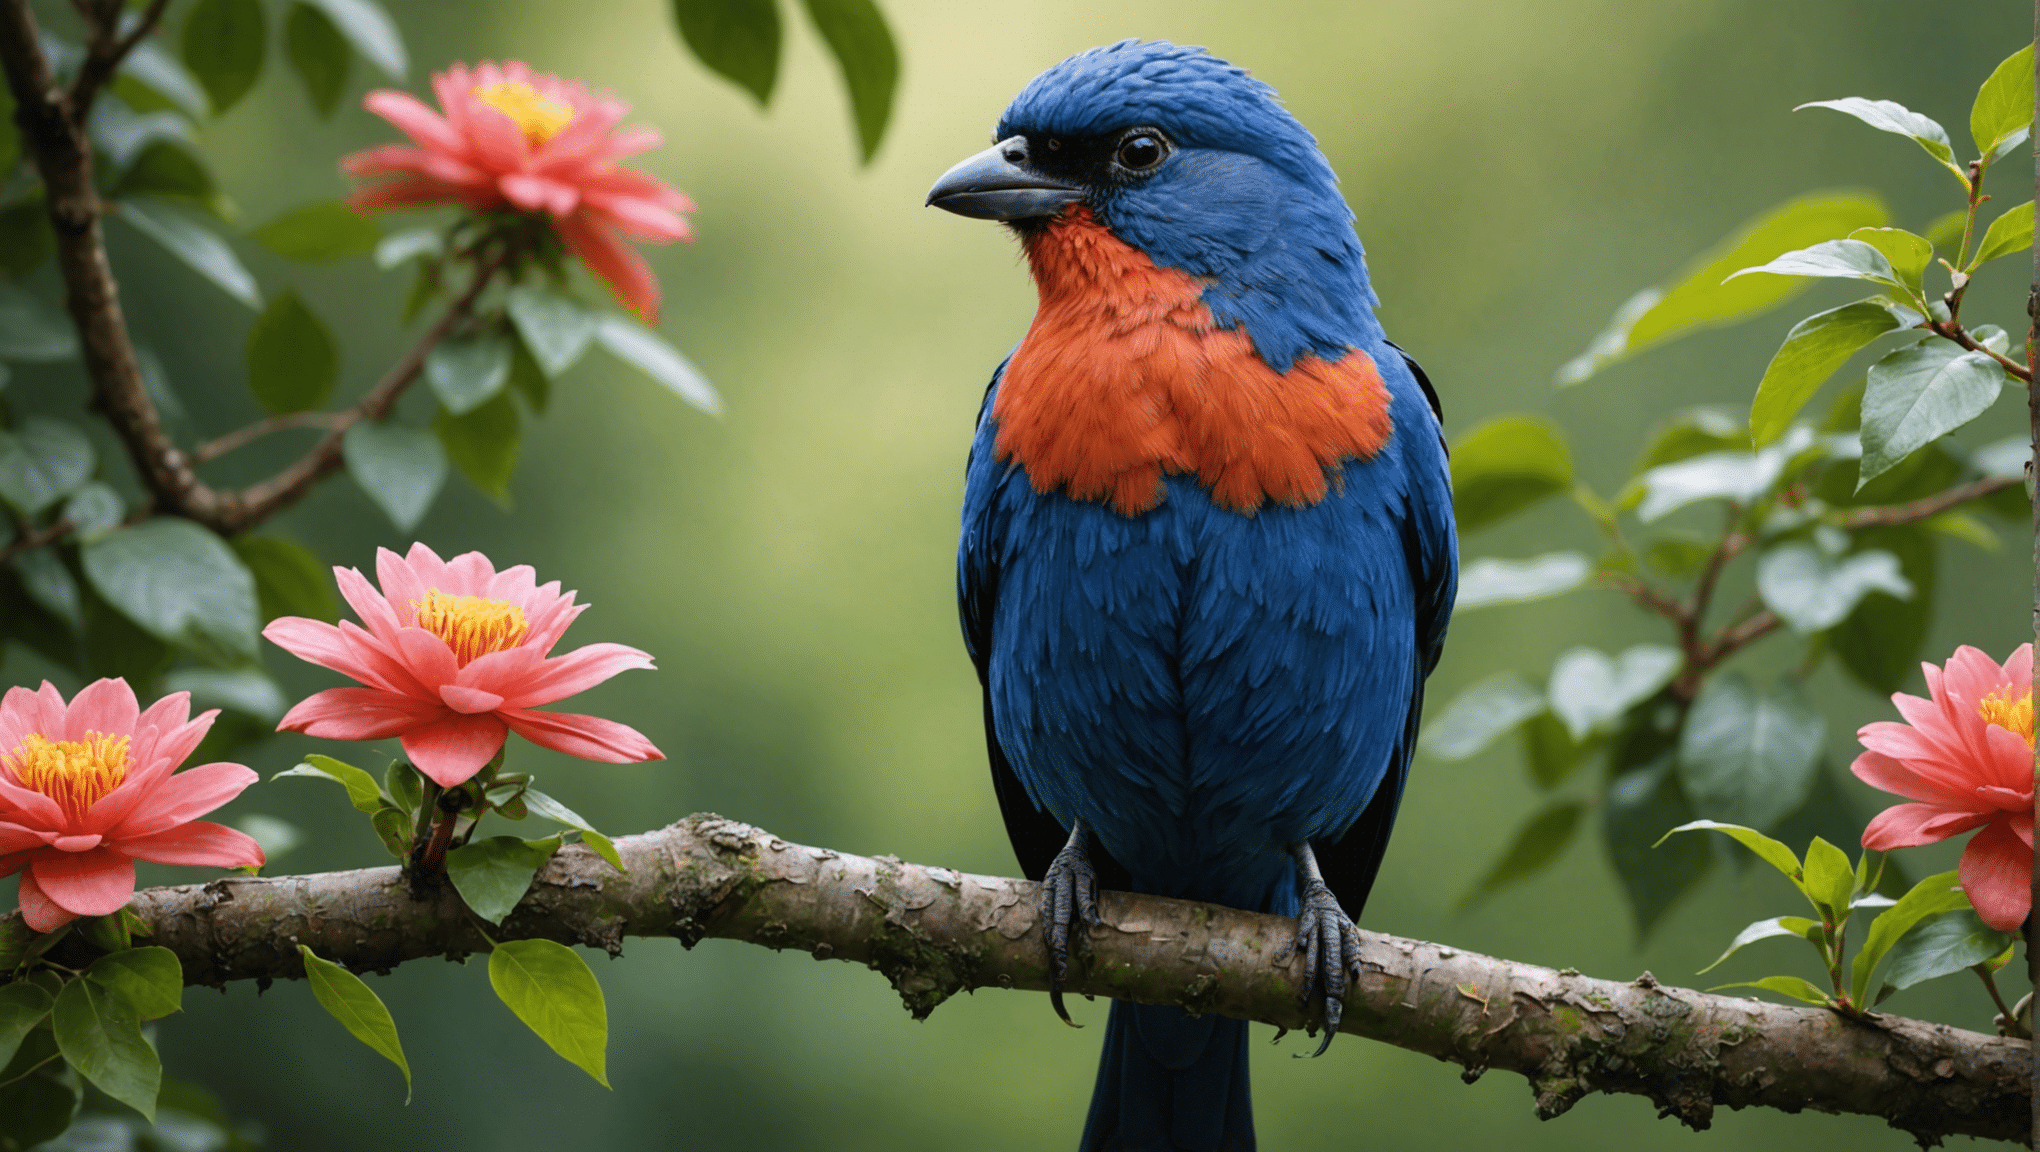 os pássaros feios são realmente bonitos? descubra nesta fascinante exploração da beleza oculta da natureza e a surpreendente verdade por trás da beleza dos pássaros aparentemente feios.